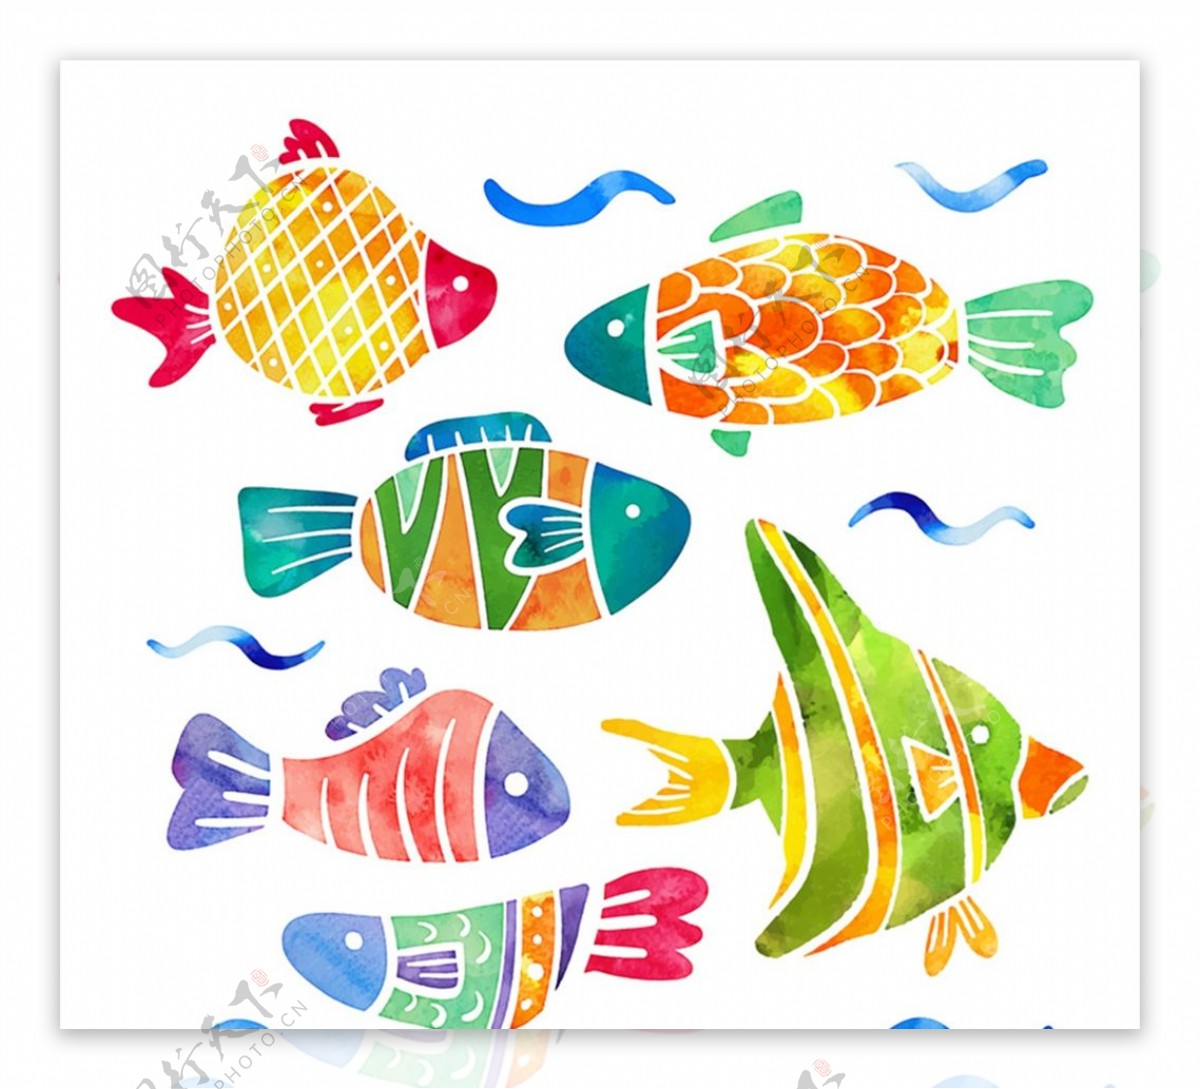 彩绘花纹鱼类图片